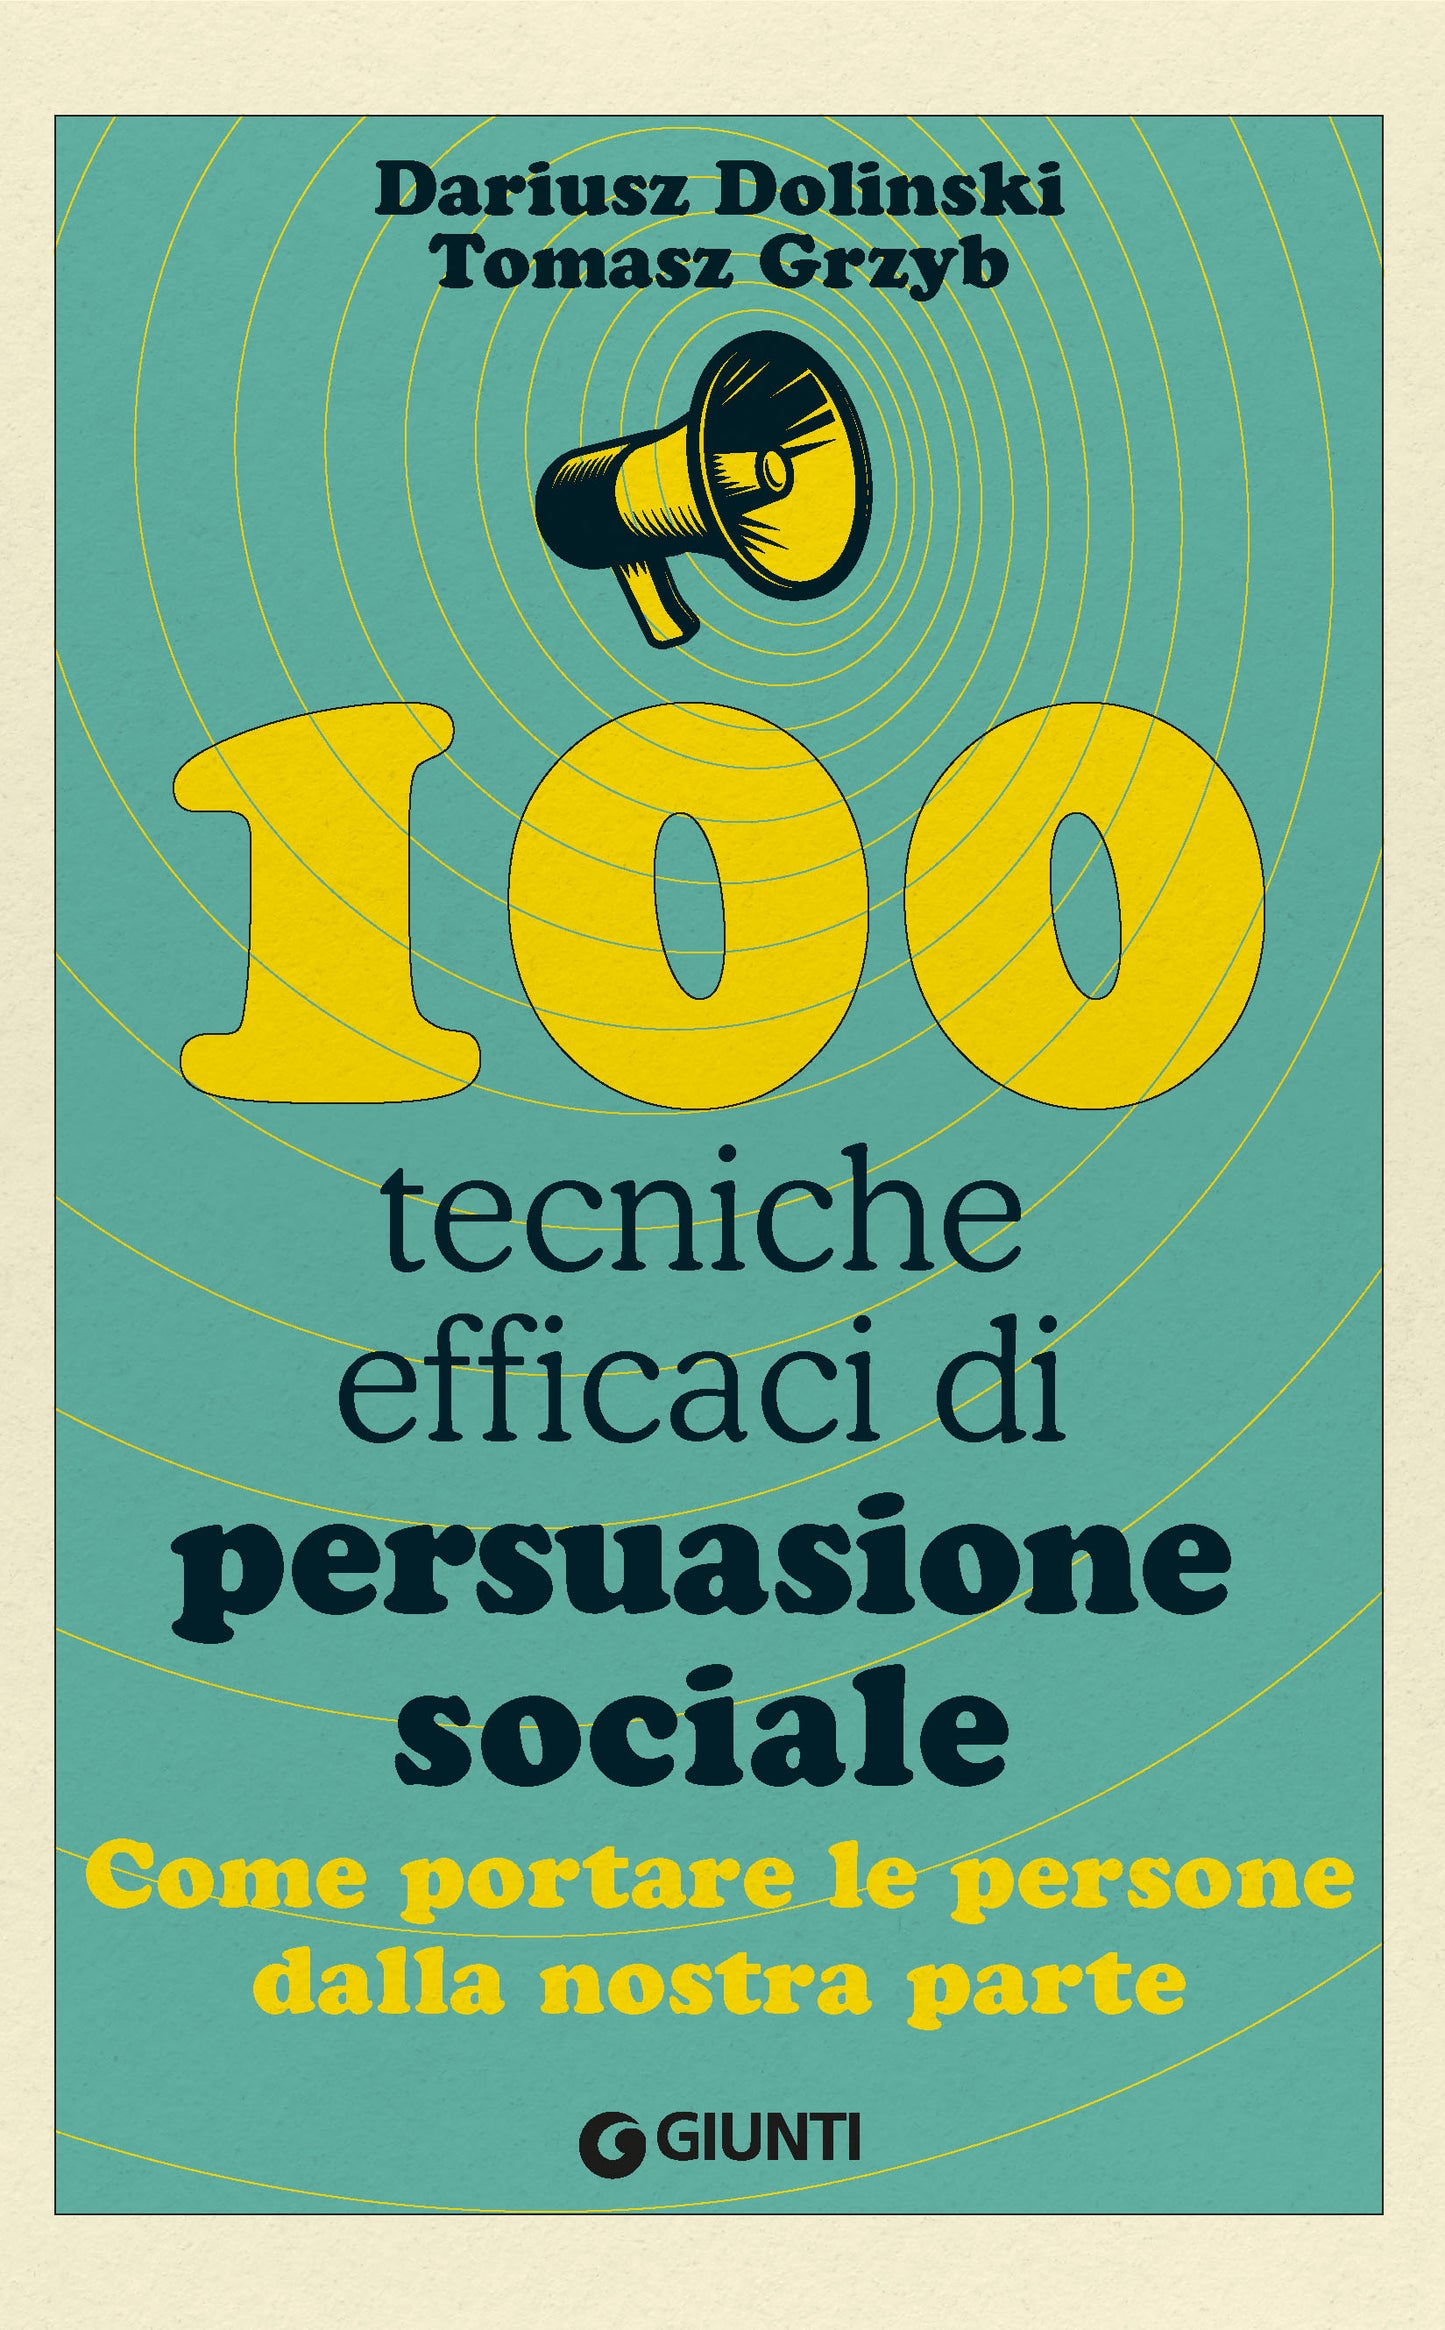 100 tecniche efficaci di persuasione sociale::Come portare le persone dalla nostra parte